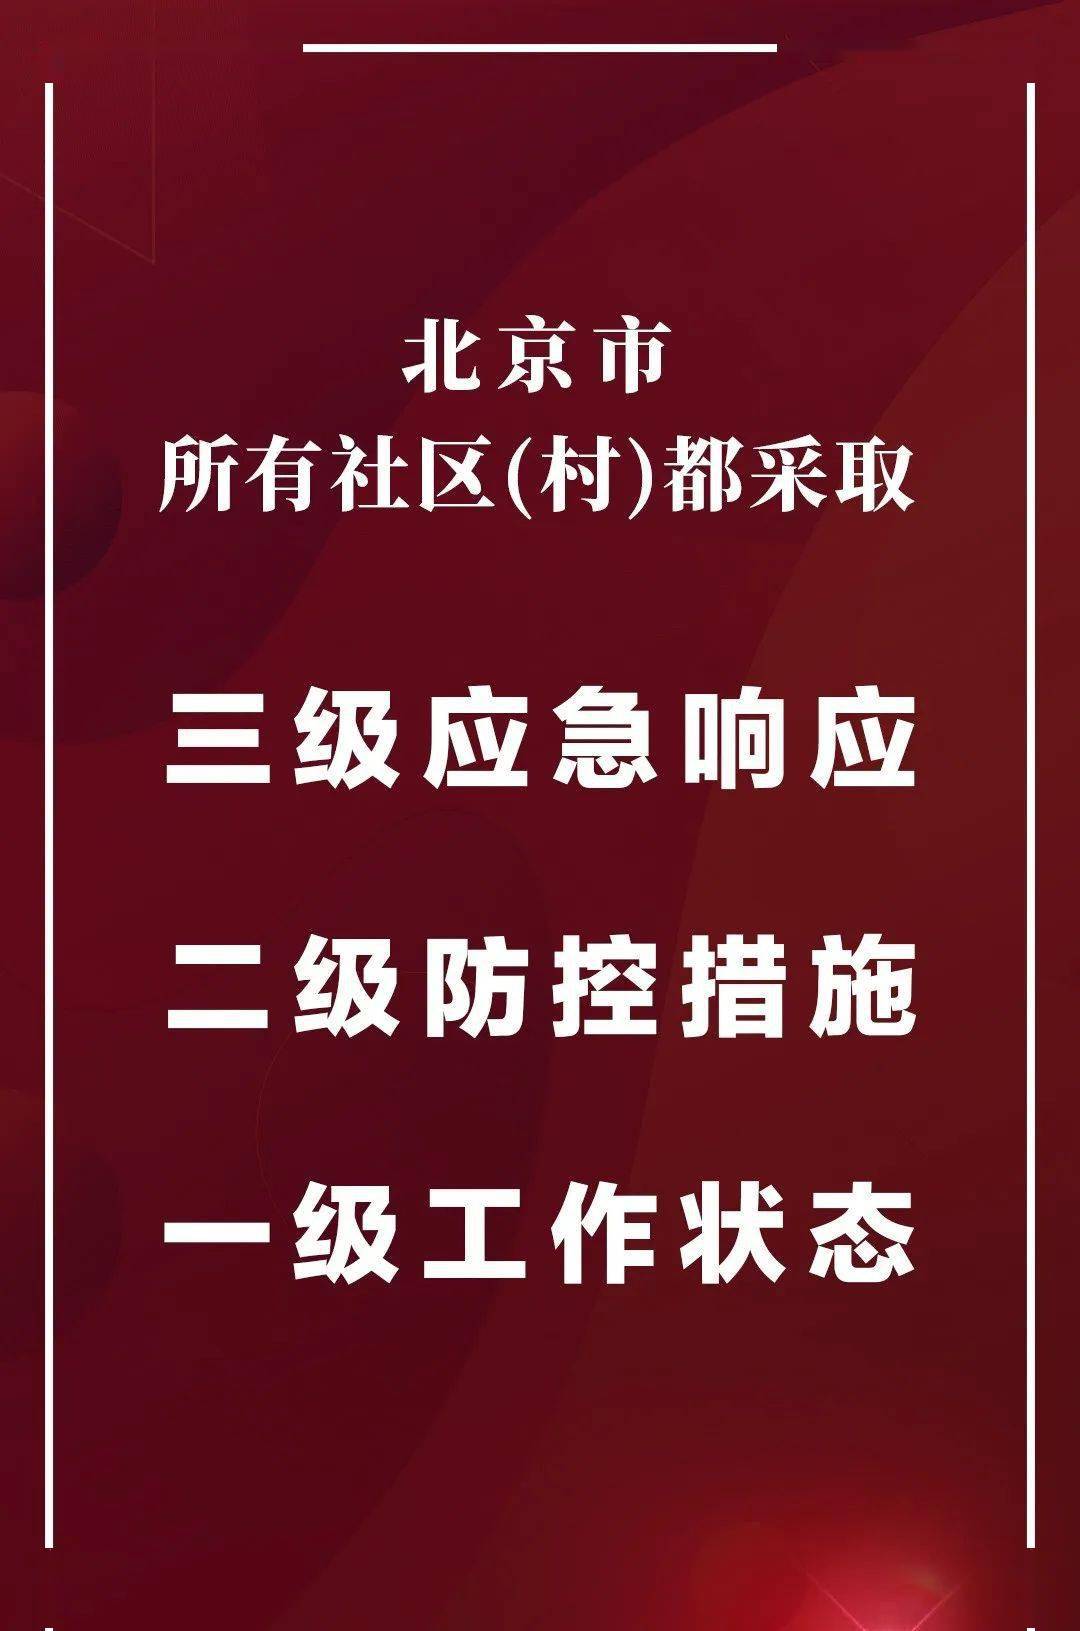 北京新增确诊34例,其中1名浙江人 北京社区防控进入战时状态